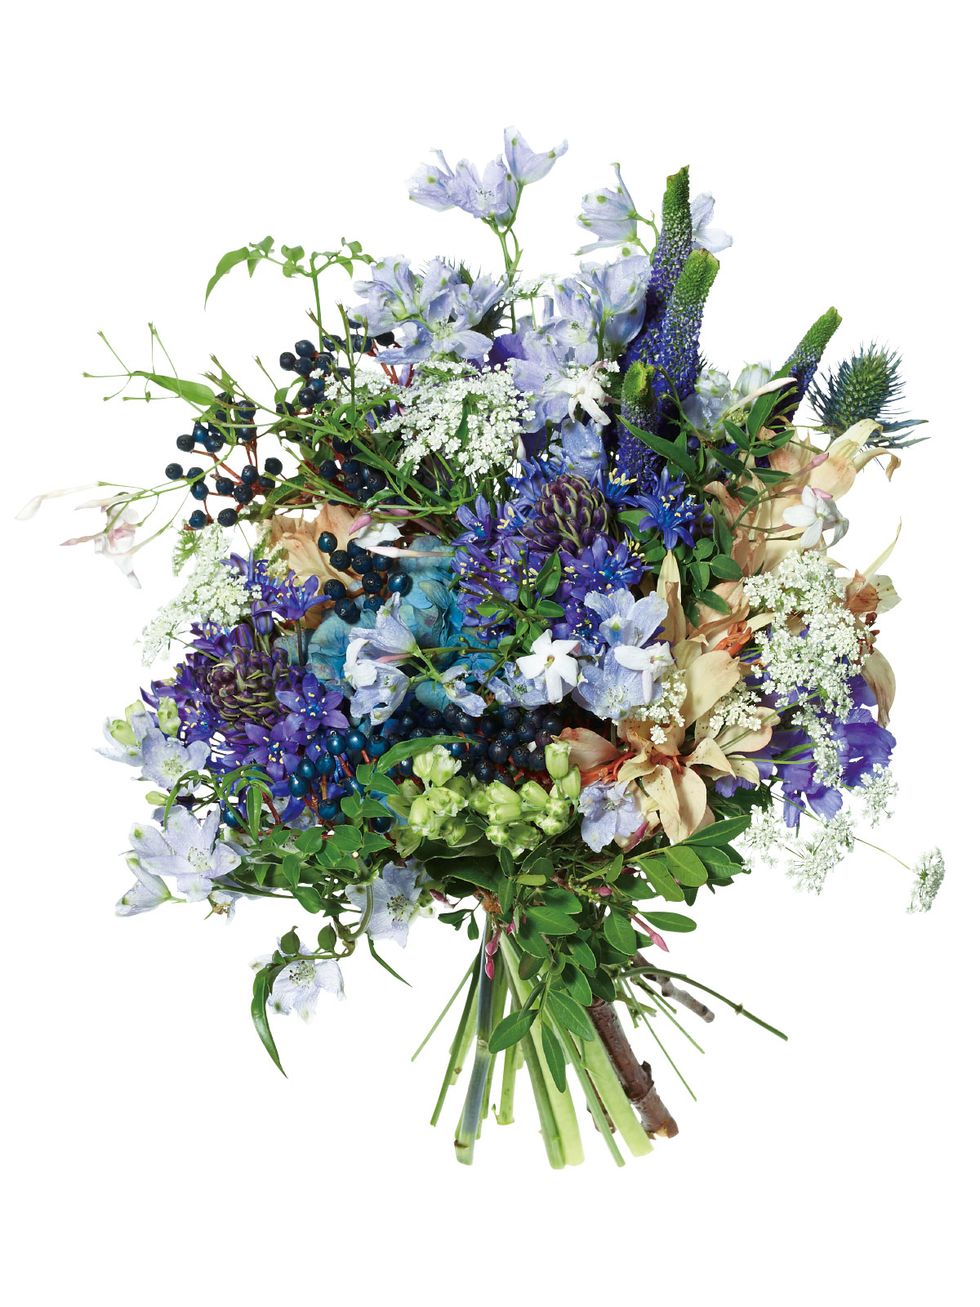 Flower, Bouquet, Plant, Cut flowers, Lavender, Floristry, Flower Arranging, Flowering plant, Lilac, Floral design, 